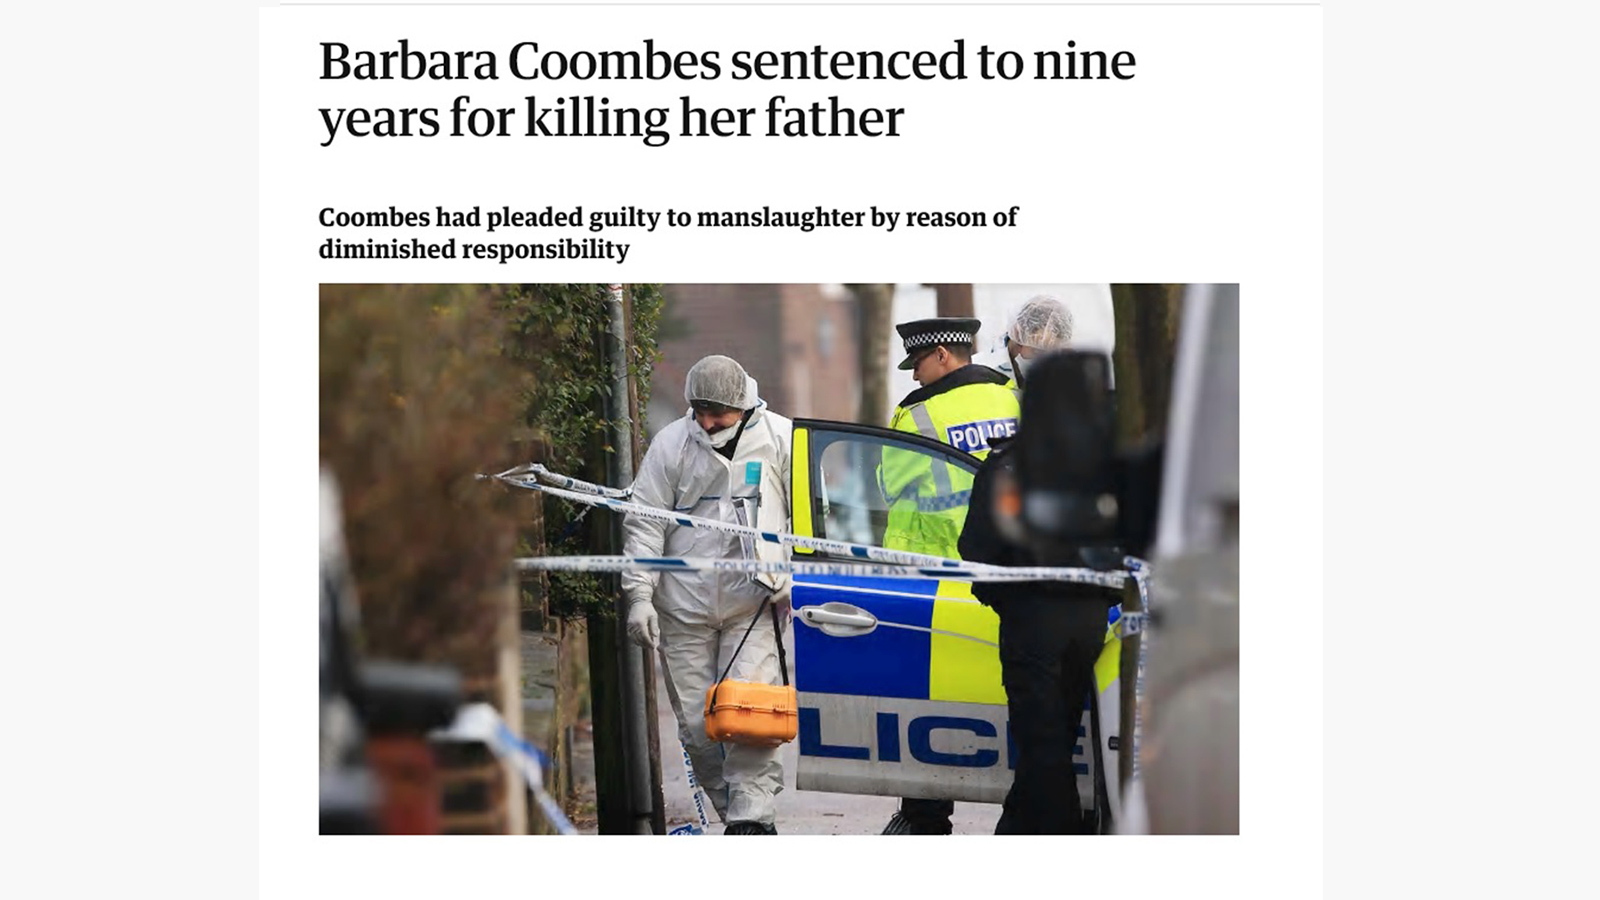 ‪عناصر الشرطة تحاول استخراج ما تبقى من جثة والد باربرا من حديقة منزلهما‬  (الصحافة البريطانية)